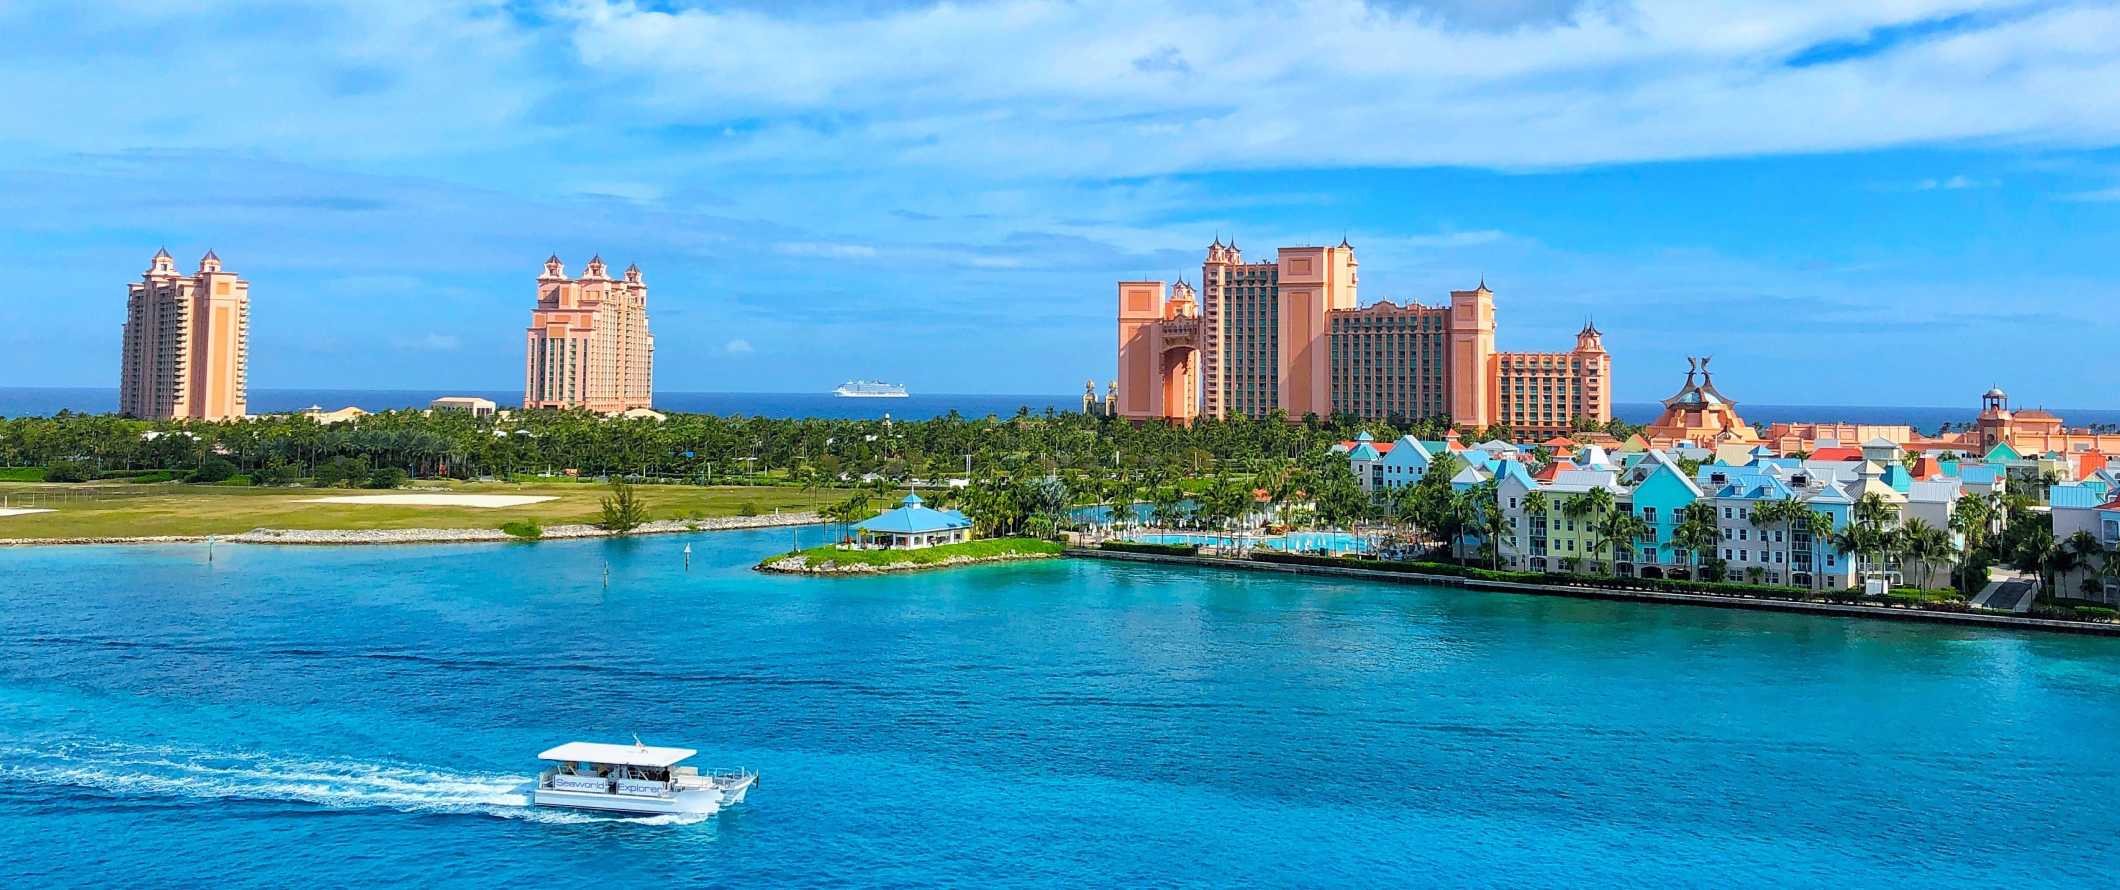 O complexo hoteleiro Atlantis ao fundo com um barco navegando pelas águas azuis brilhantes em primeiro plano, nas Bahamas